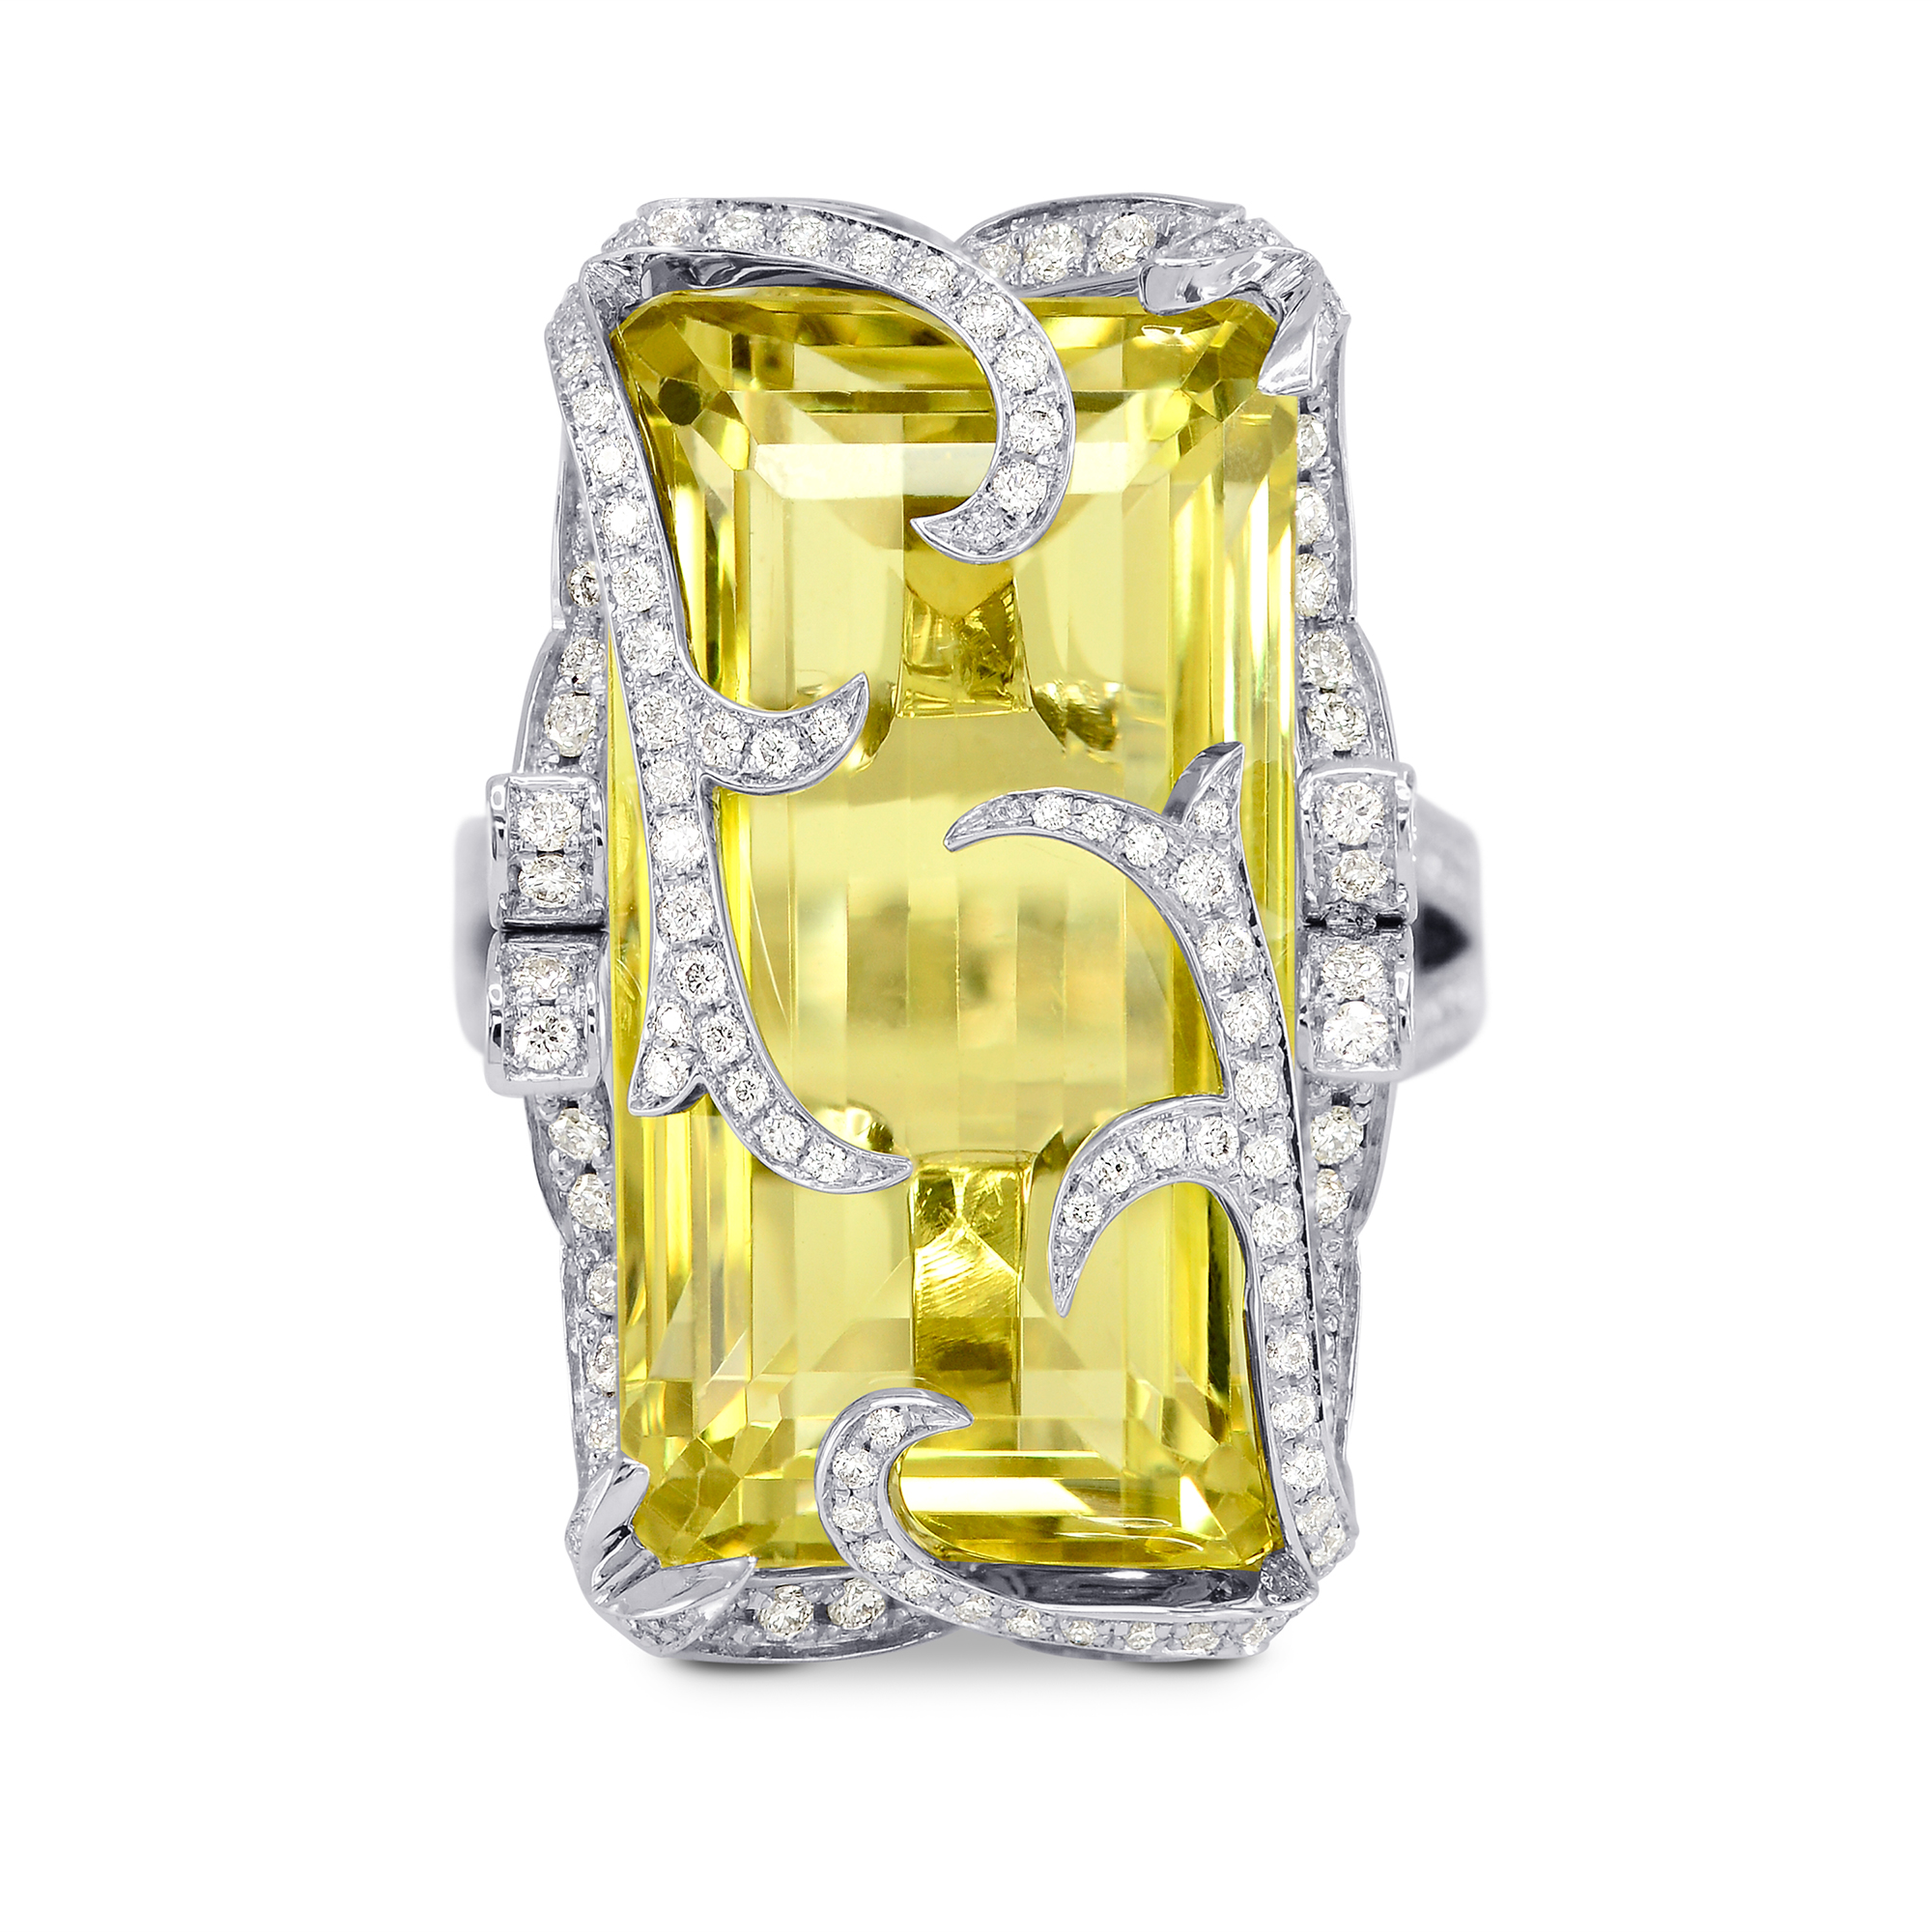 Quarz Lem Smaragd Edelstein Ring 18 Karat Weißgold Größe 6 25 Karat, ARTIKELNUMMER 155673 (26,42 Karat TW)